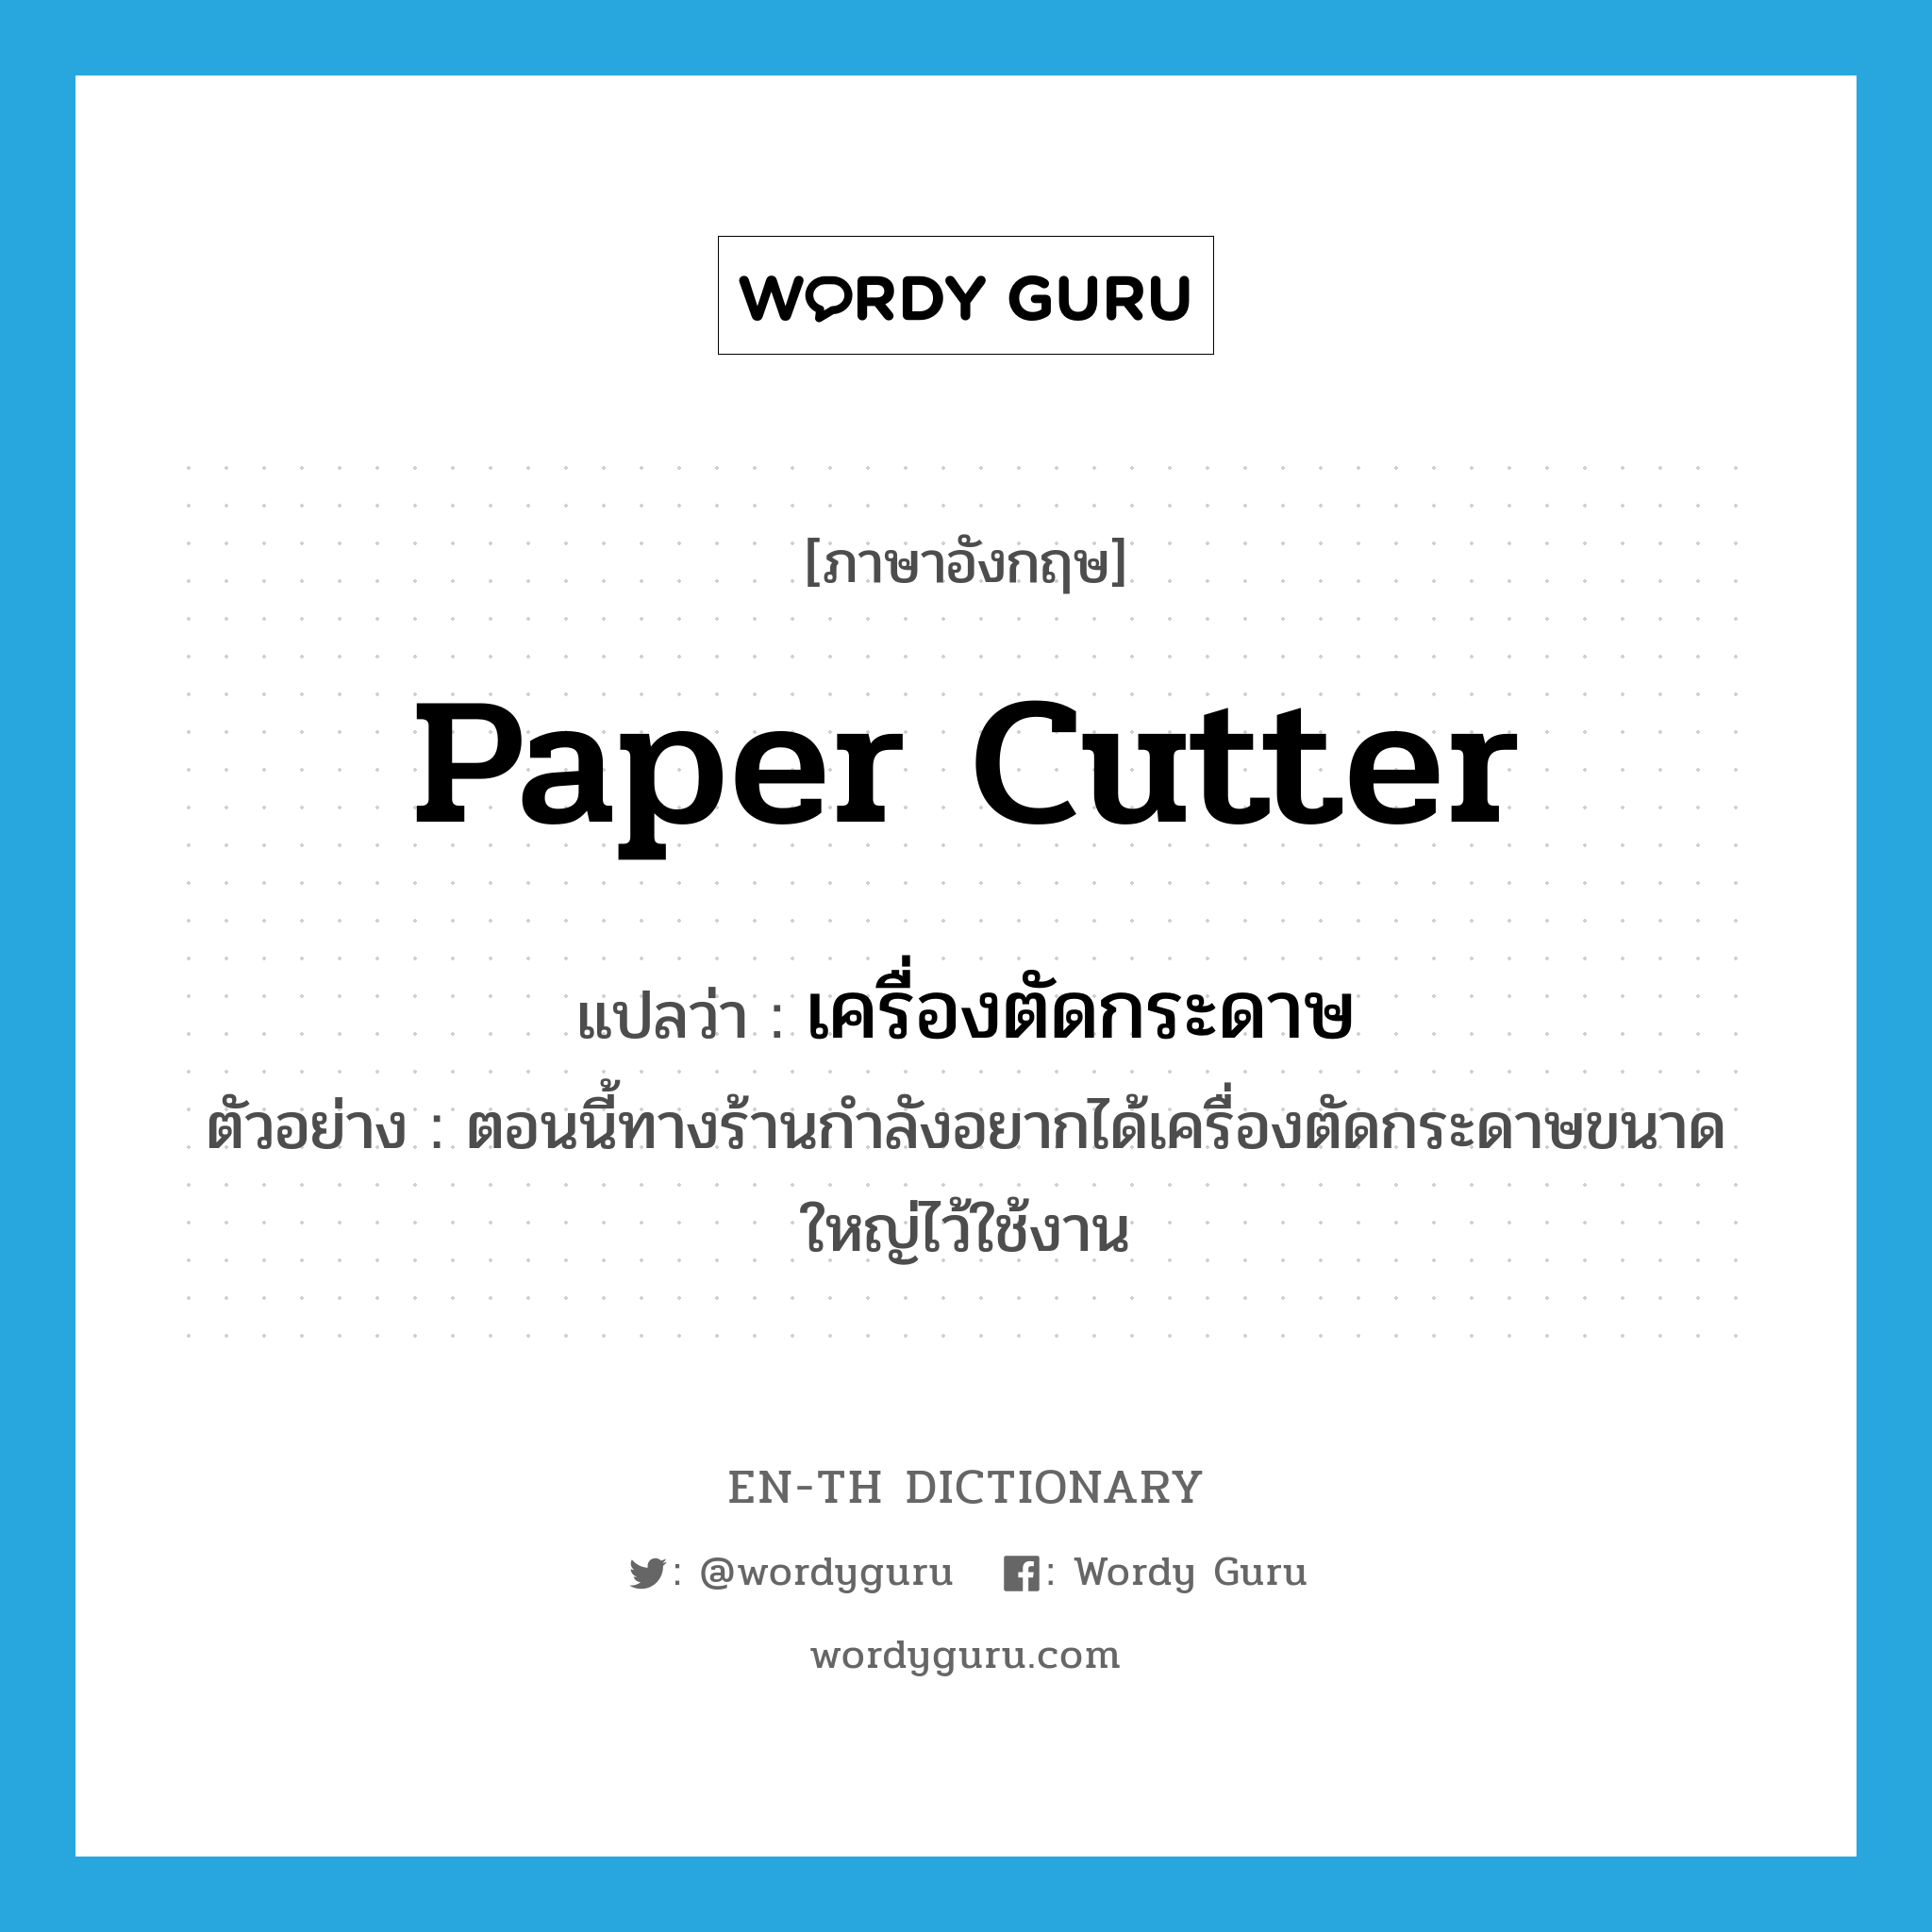 paper cutter แปลว่า?, คำศัพท์ภาษาอังกฤษ paper cutter แปลว่า เครื่องตัดกระดาษ ประเภท N ตัวอย่าง ตอนนี้ทางร้านกำลังอยากได้เครื่องตัดกระดาษขนาดใหญ่ไว้ใช้งาน หมวด N